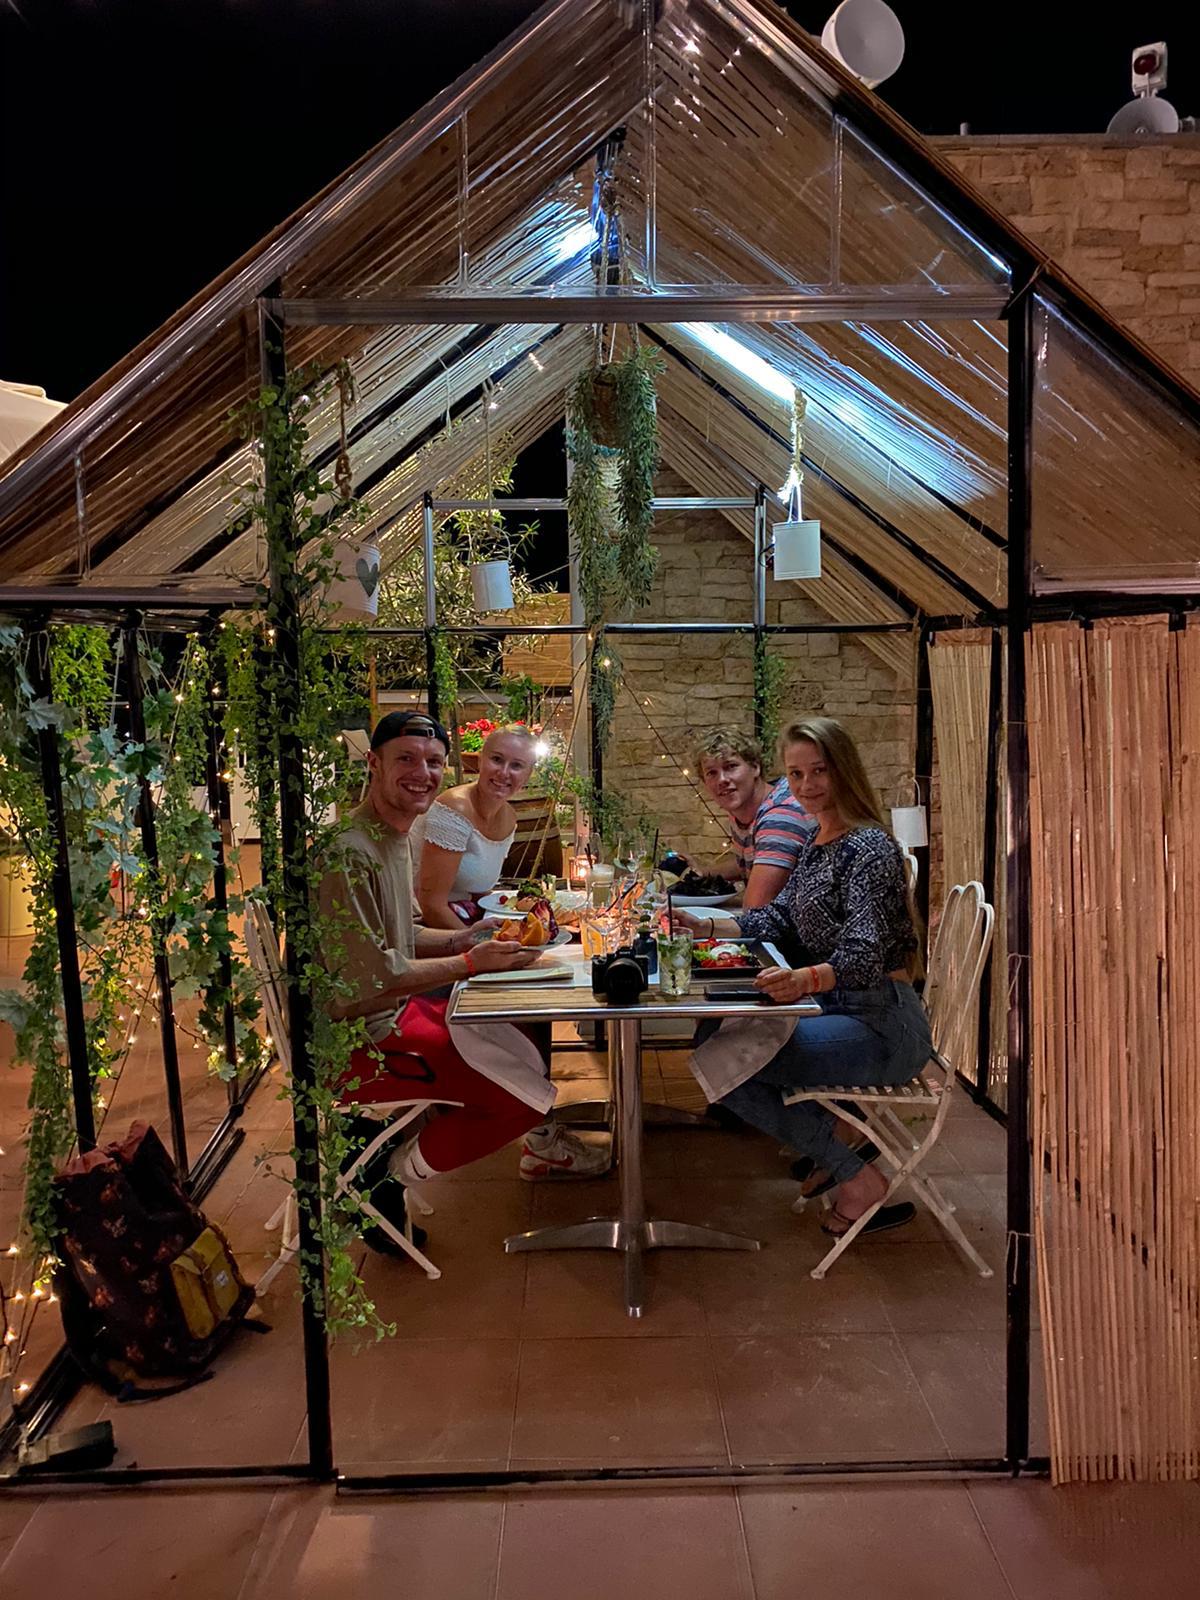 Roof Garden | Het nieuwe dakterras van ons restaurant is omgetoverd tot een prachtige tuin.